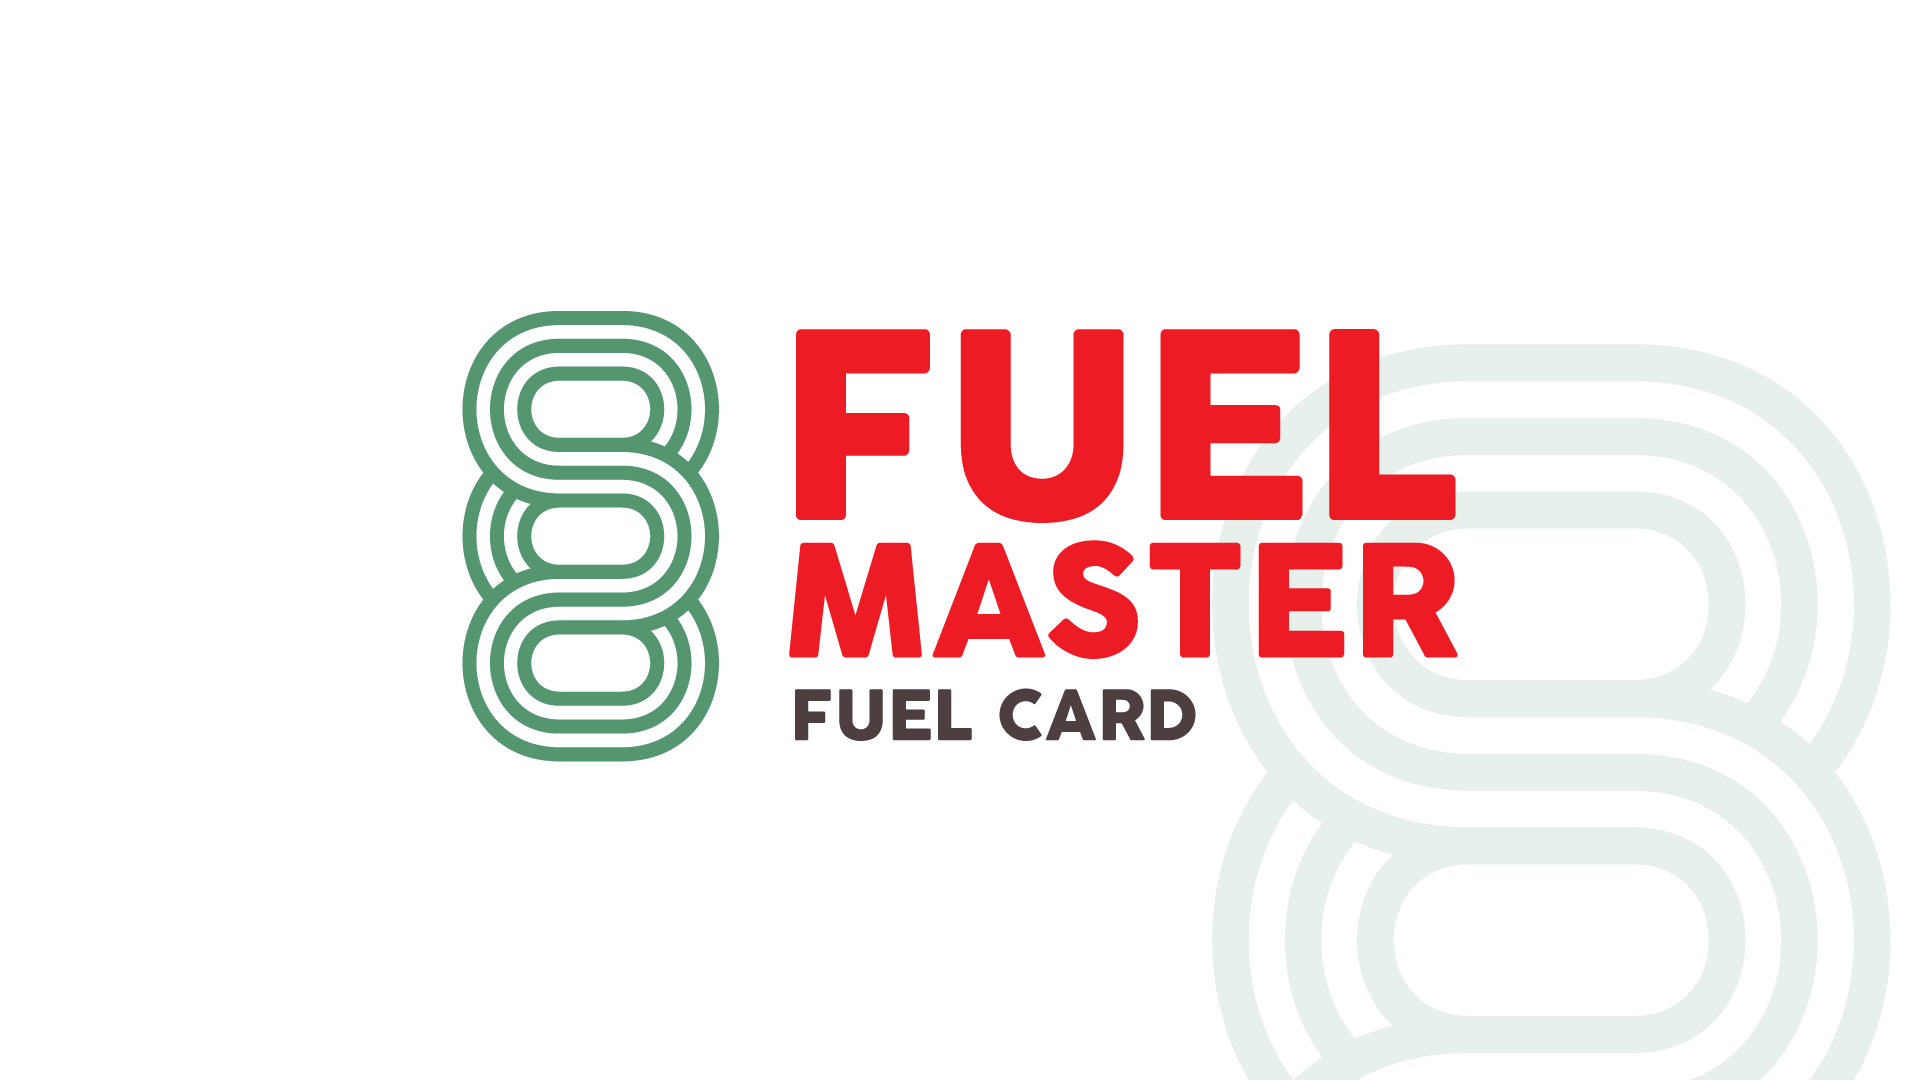 Fuel Master Fuel Card